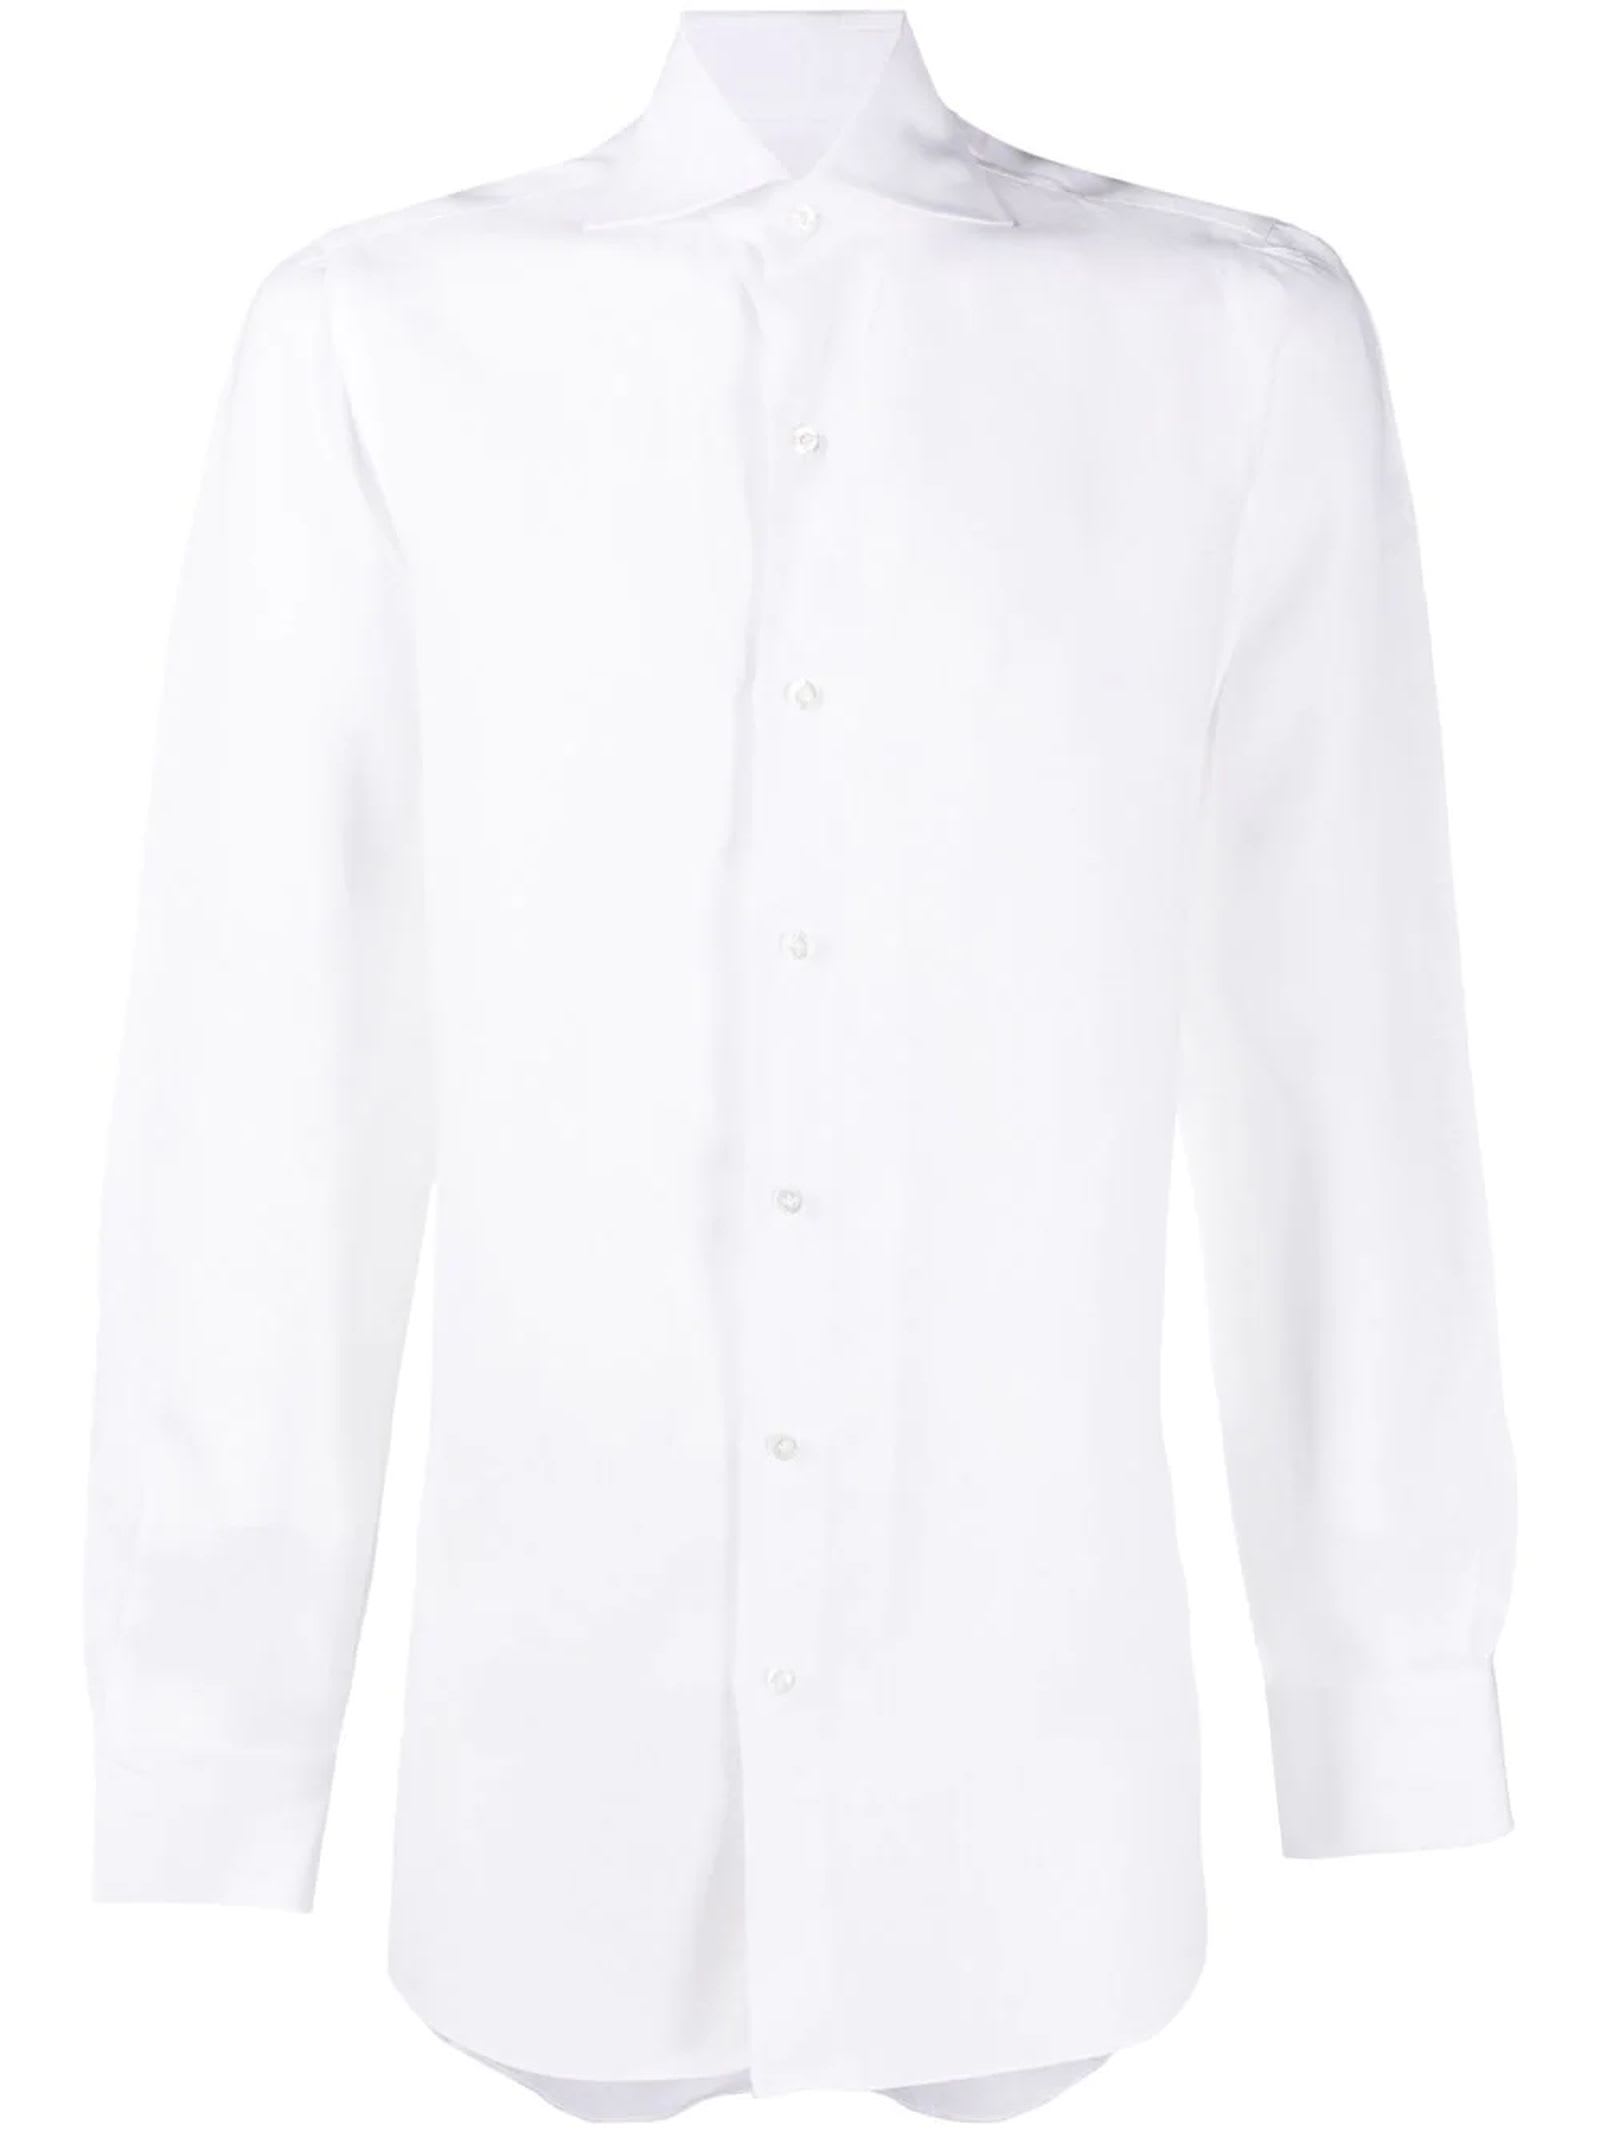 Finamore White Linen Long Sleeve Shirt